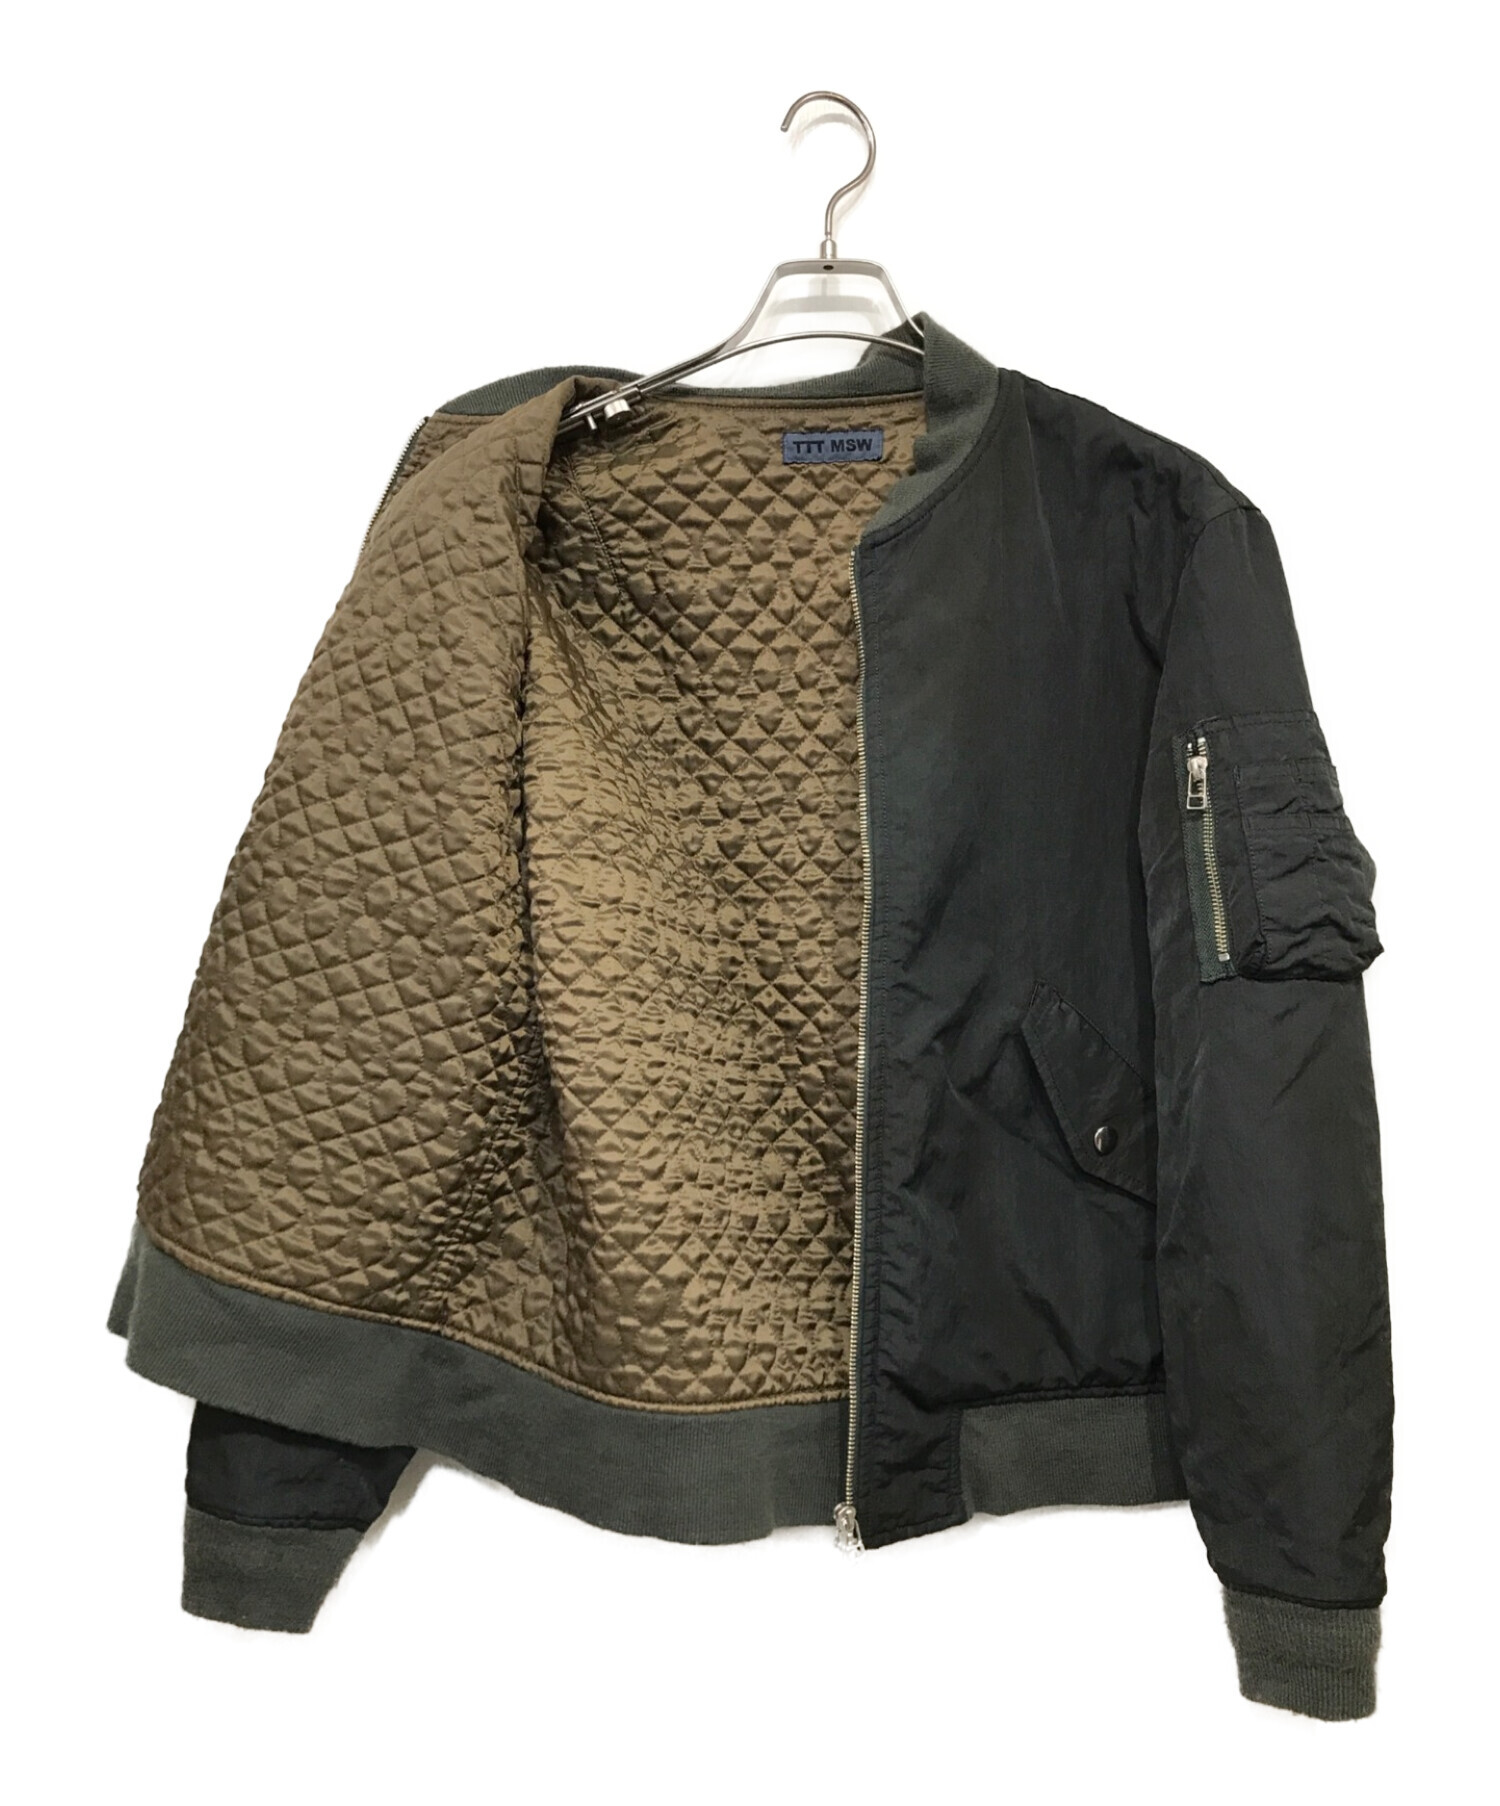 TTT MSW (ティーモダンストリートウェア) MA-1ジャケット ブラック サイズ:SIZE M